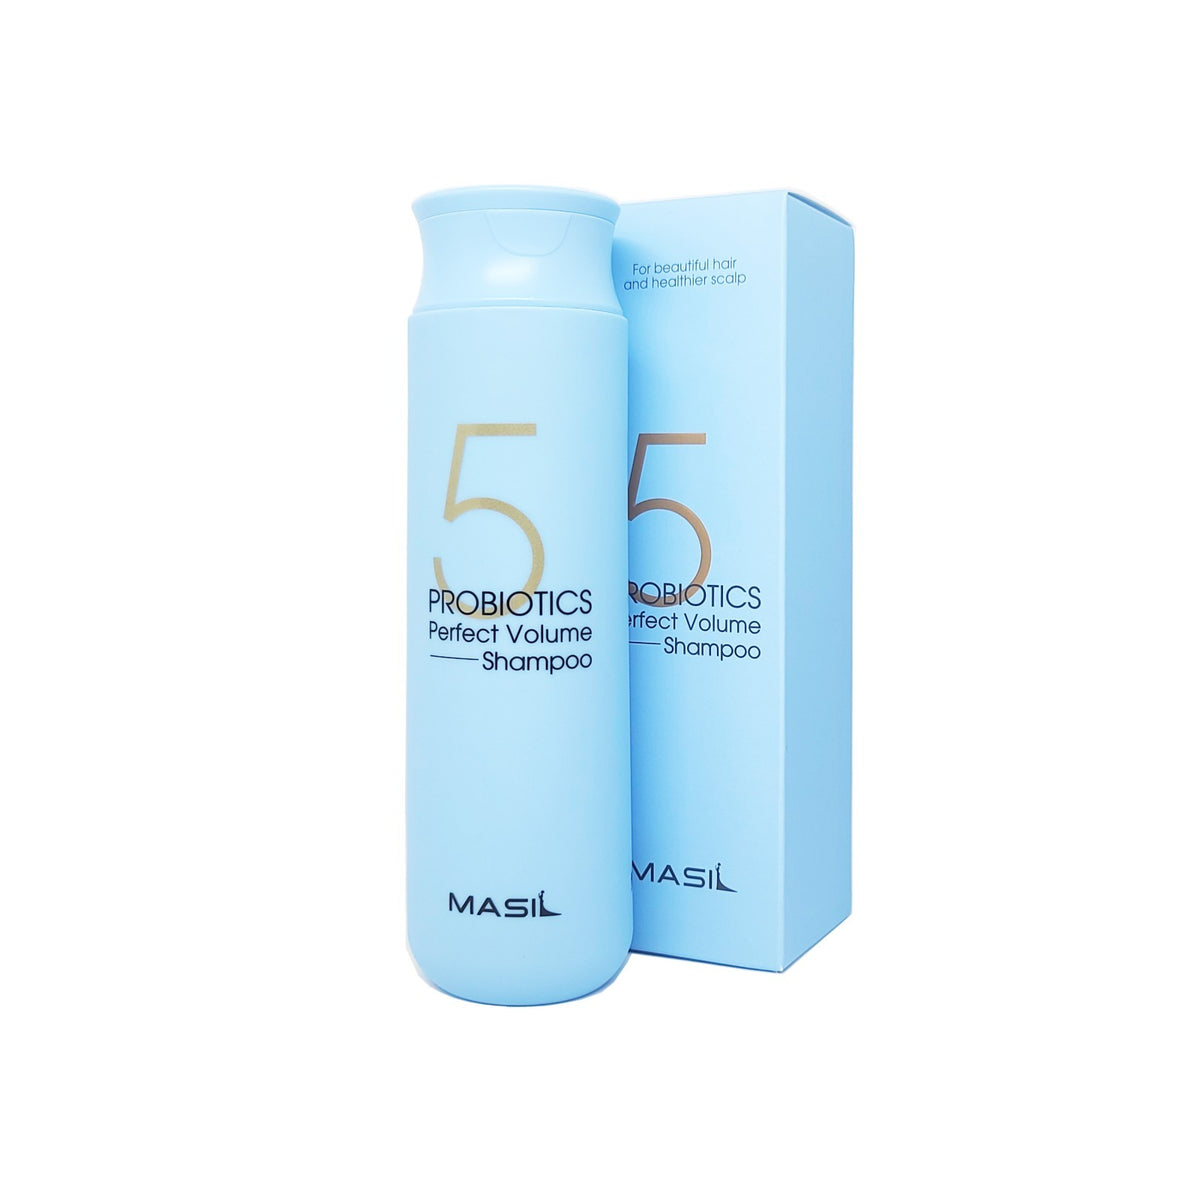 Masil 5 Probiotics Shampoo 300ml